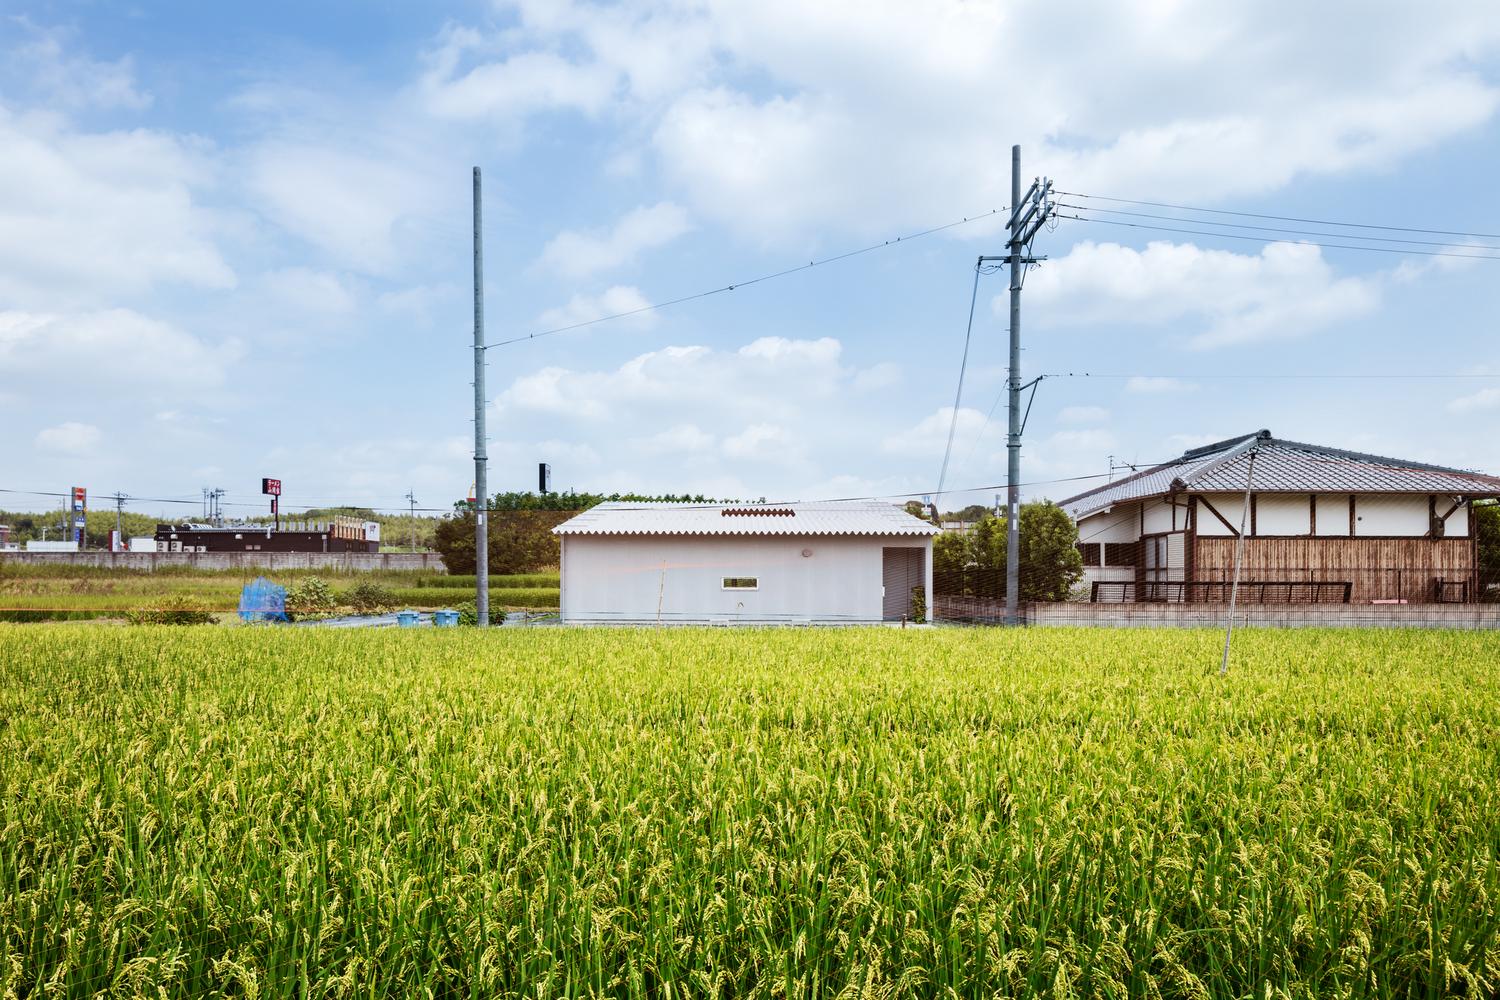 Дом на 85 квадратных метров в Японии